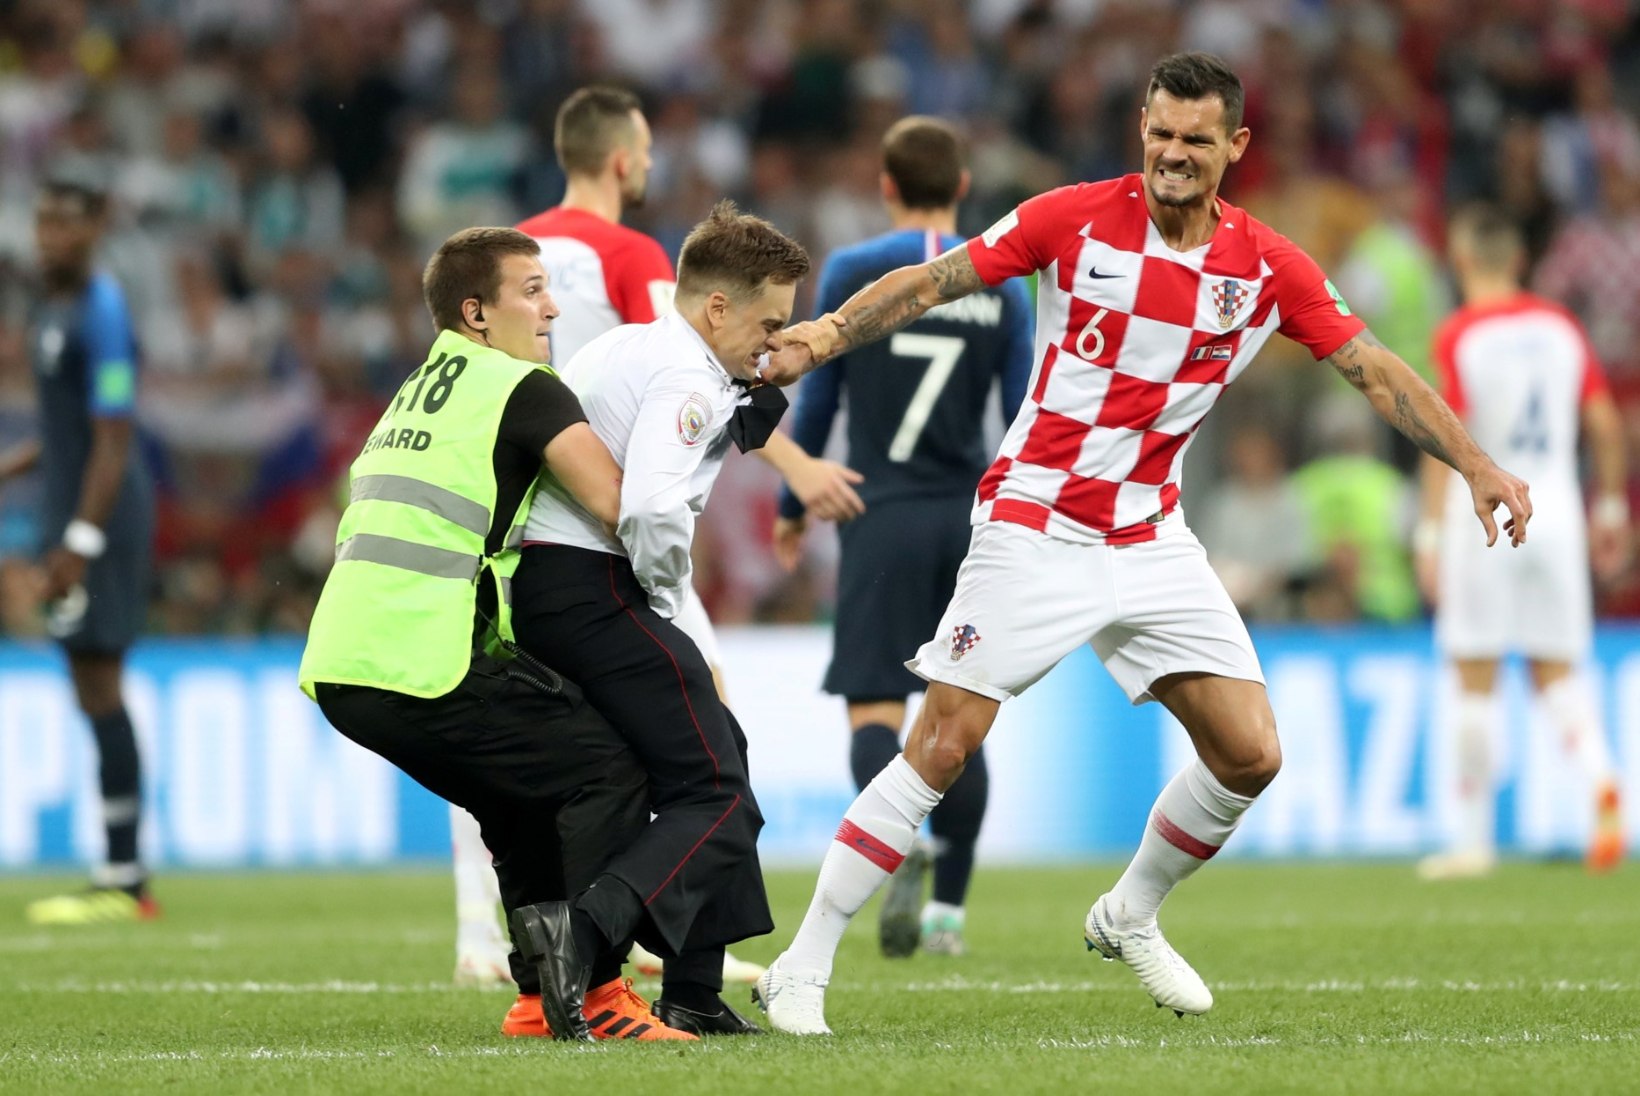 GALERII | Lovren 1 - Huligaan 0, Horvaatia keskkaitsja tiris väljakule jooksnud fänni turvade nina all ise pikali